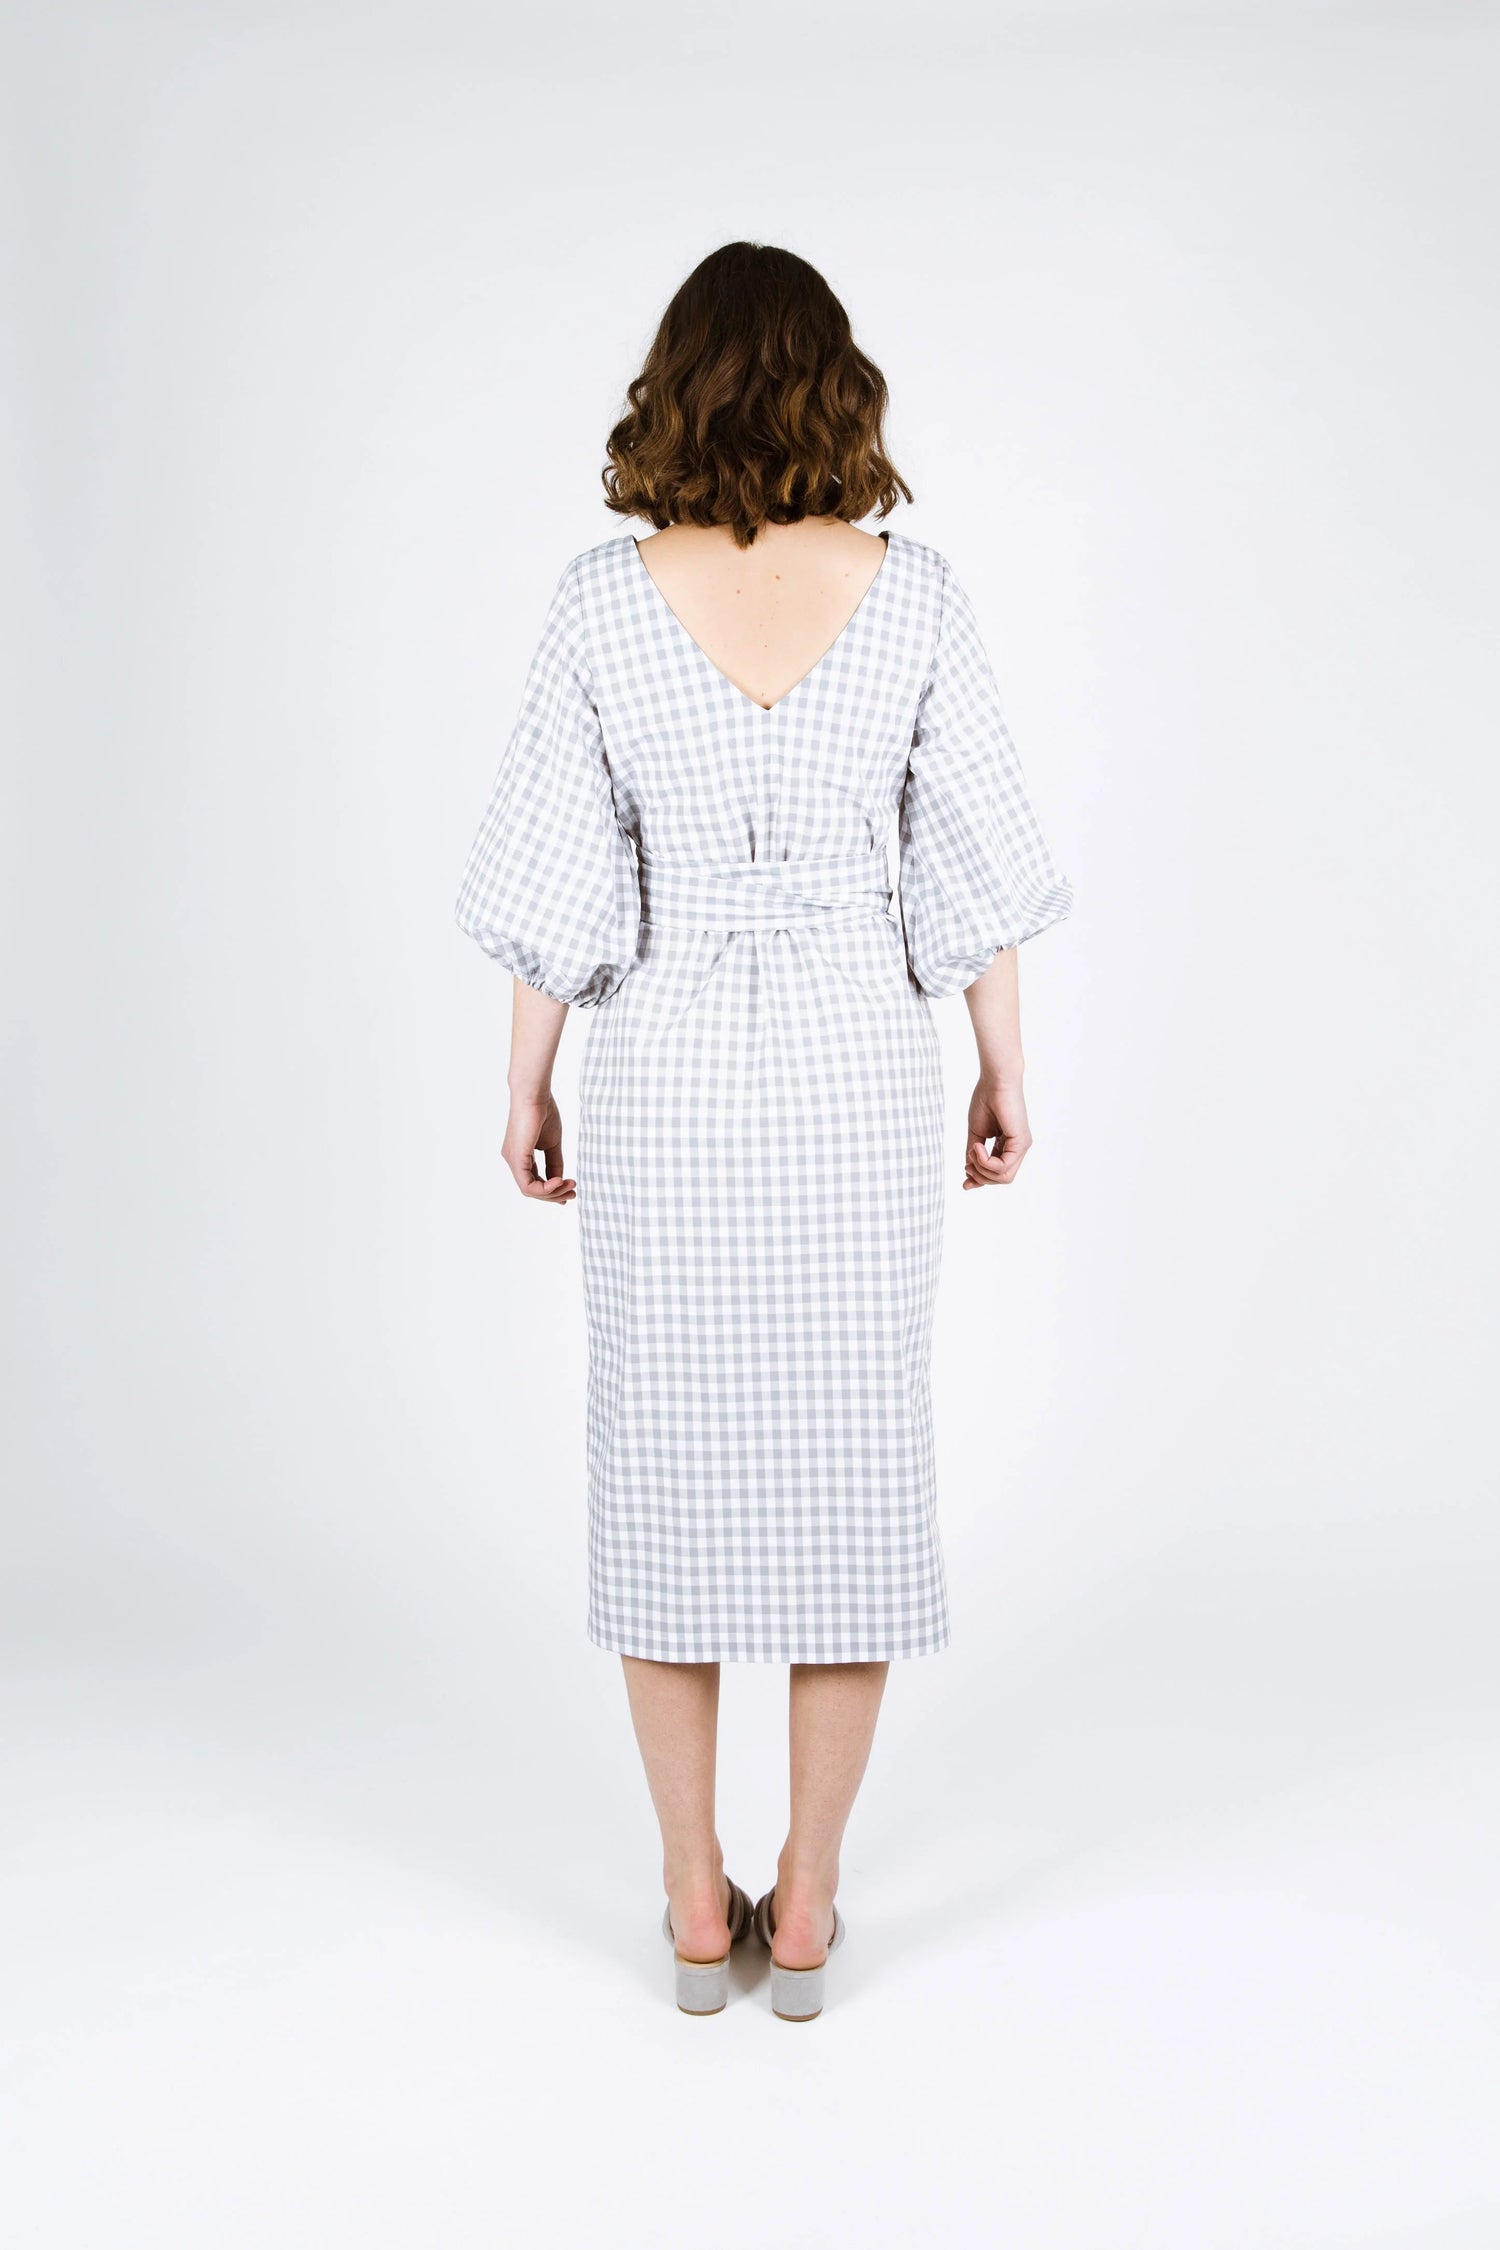 Papercut Patterns - Aura Dress/Skirt - Sewing Gem